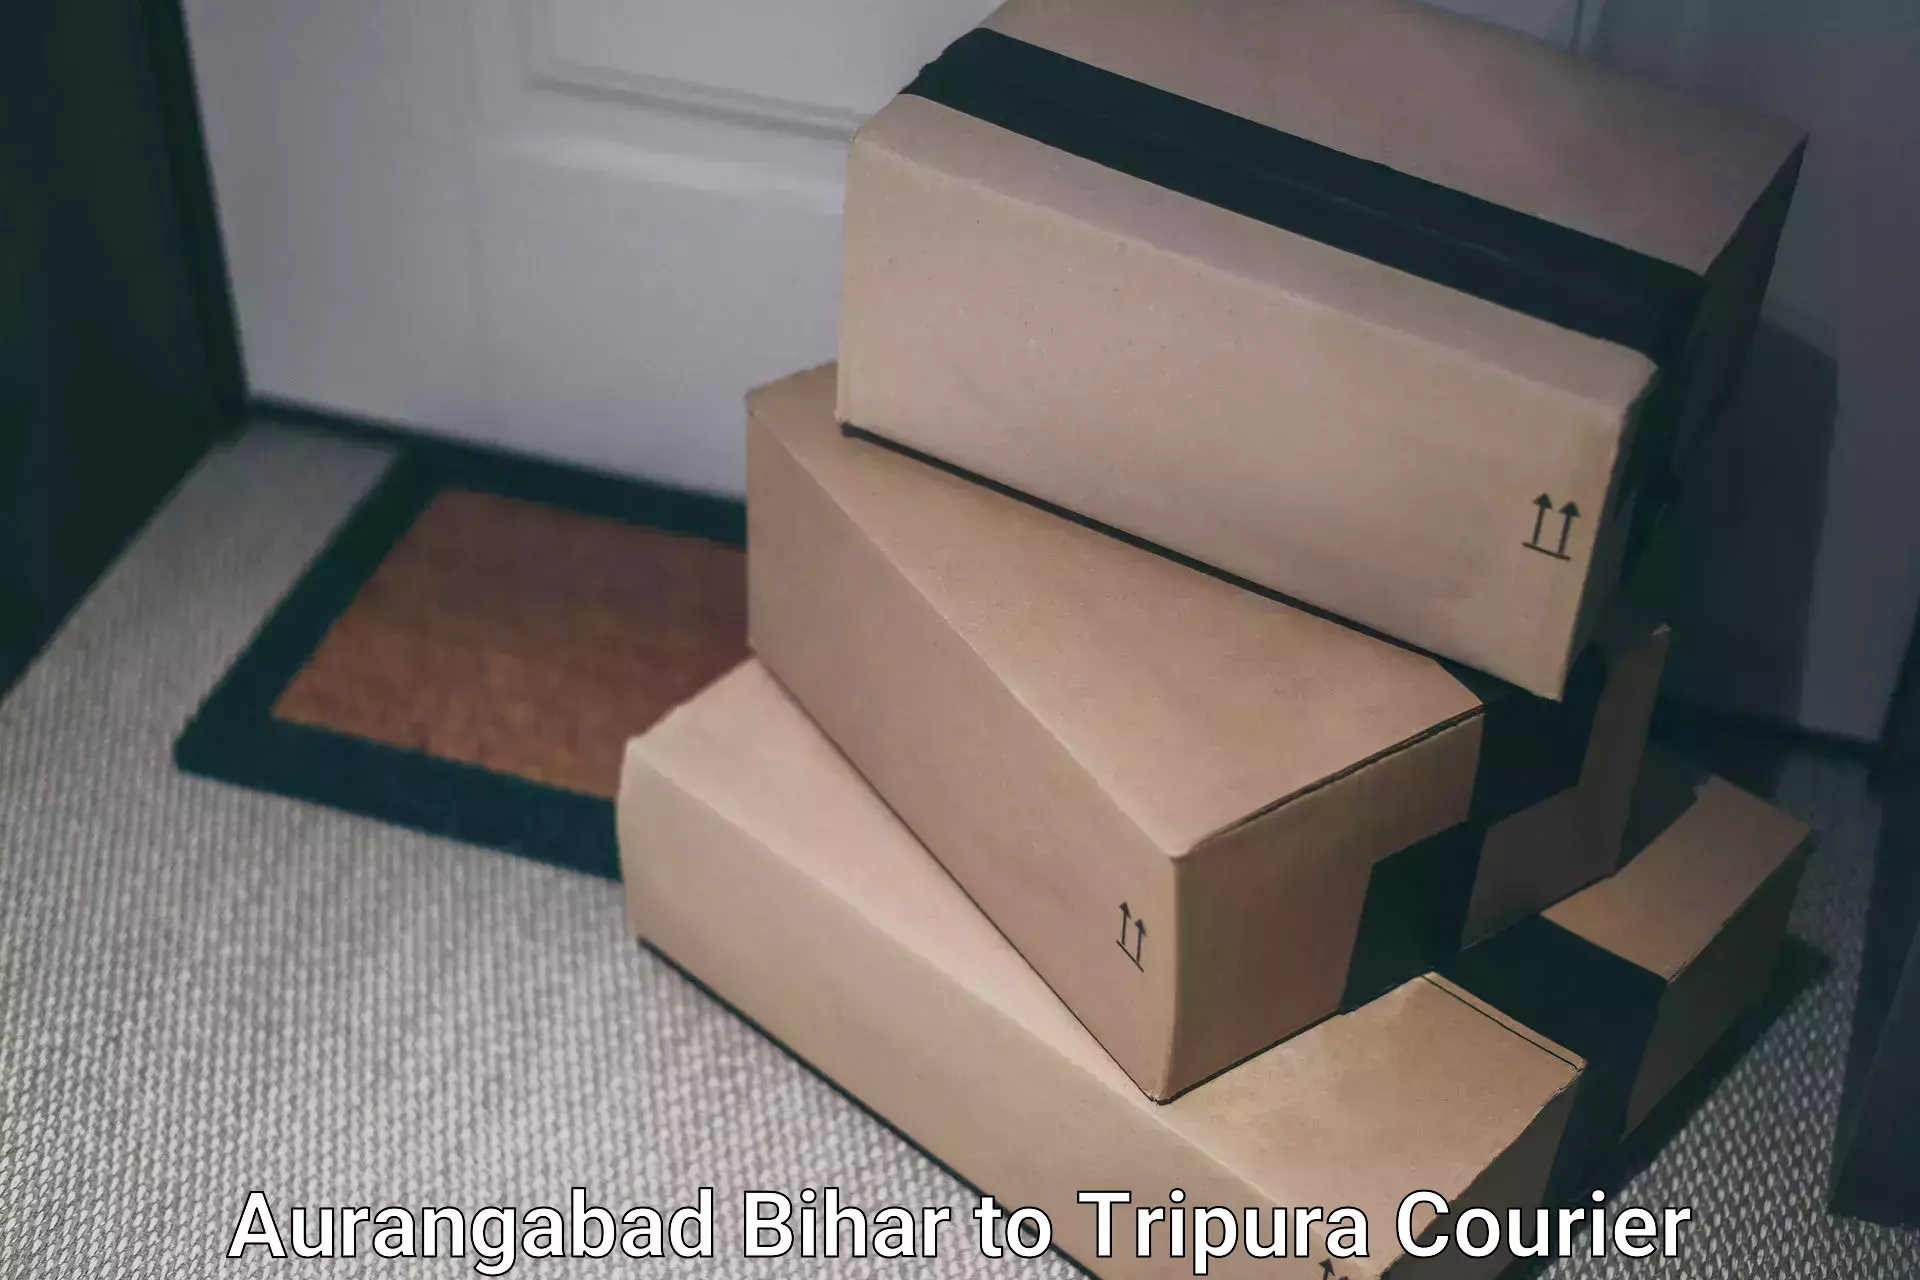 Courier service efficiency in Aurangabad Bihar to West Tripura